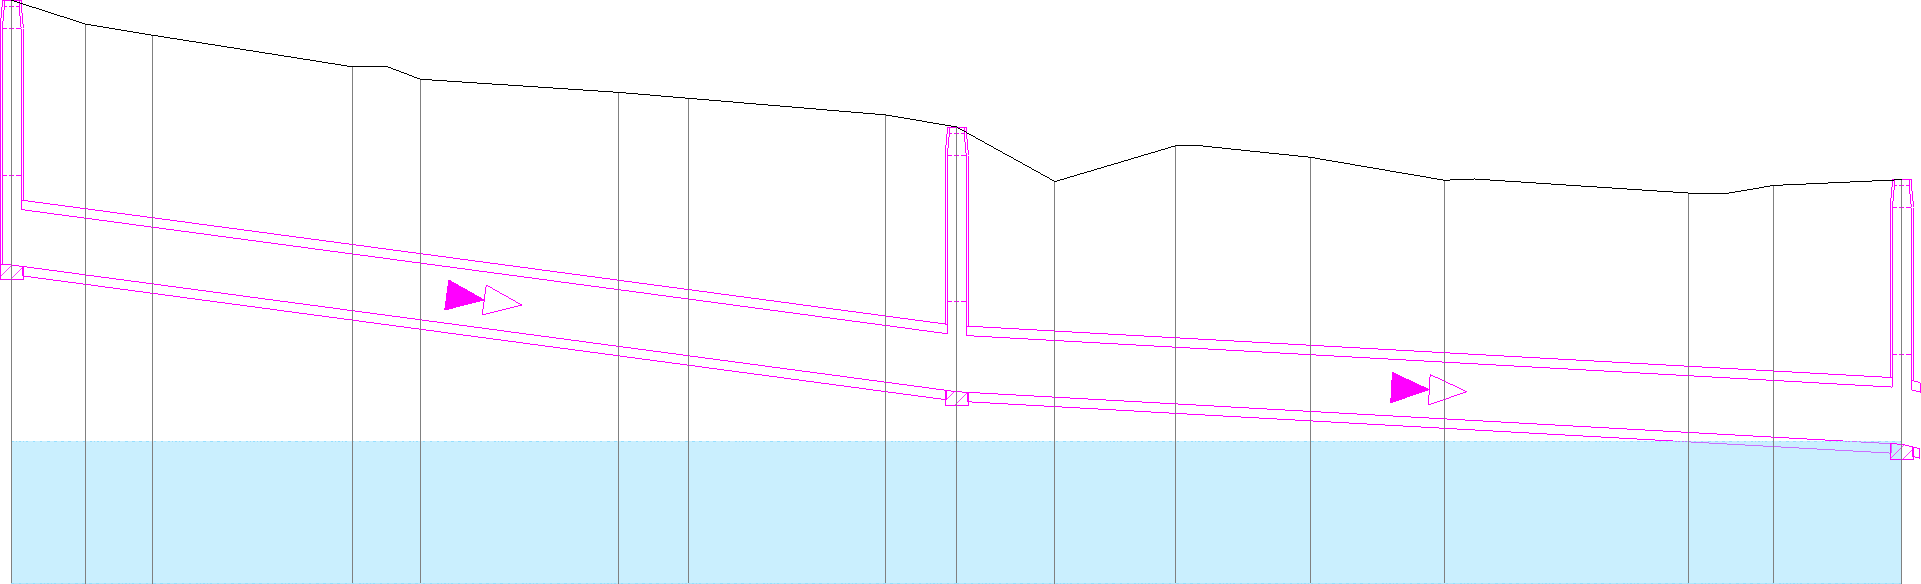 Screenshot Kanallängsschnitt mit Horizont und Grundwasser